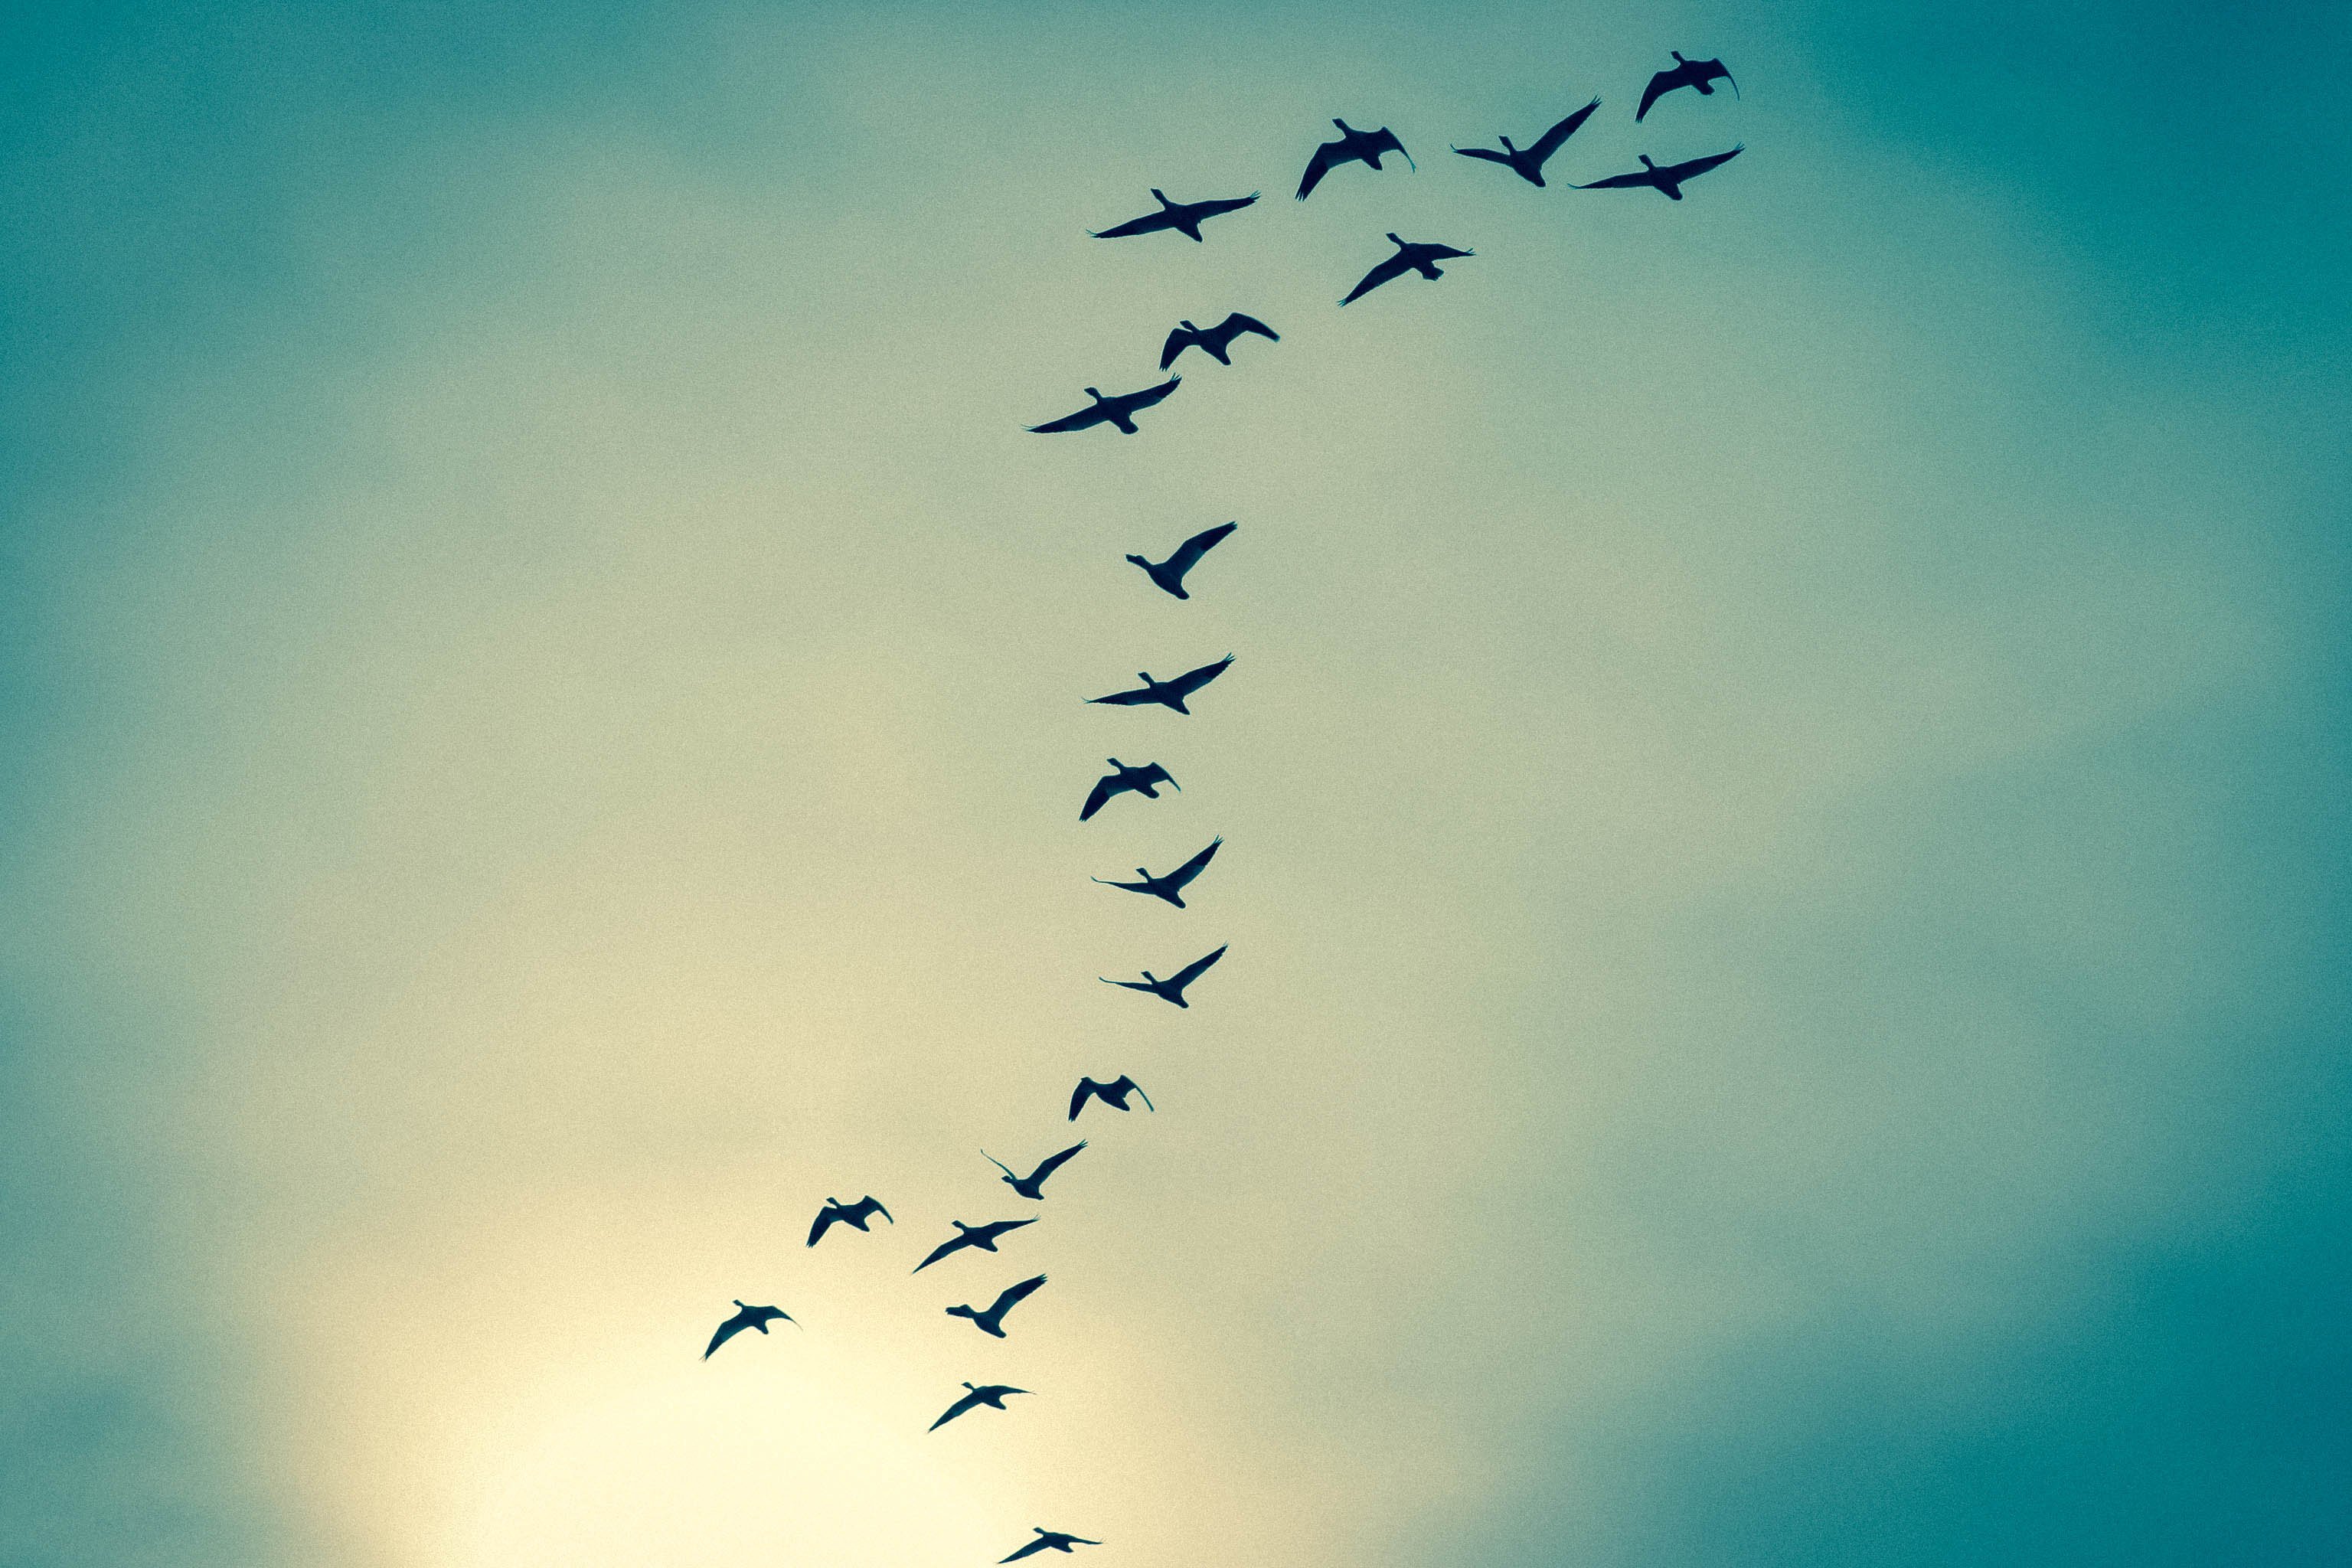 Глянь на небо птички летят колокольчики. Птицы в небе. Стая птиц. Птица в полете. Красивое небо с птицами.